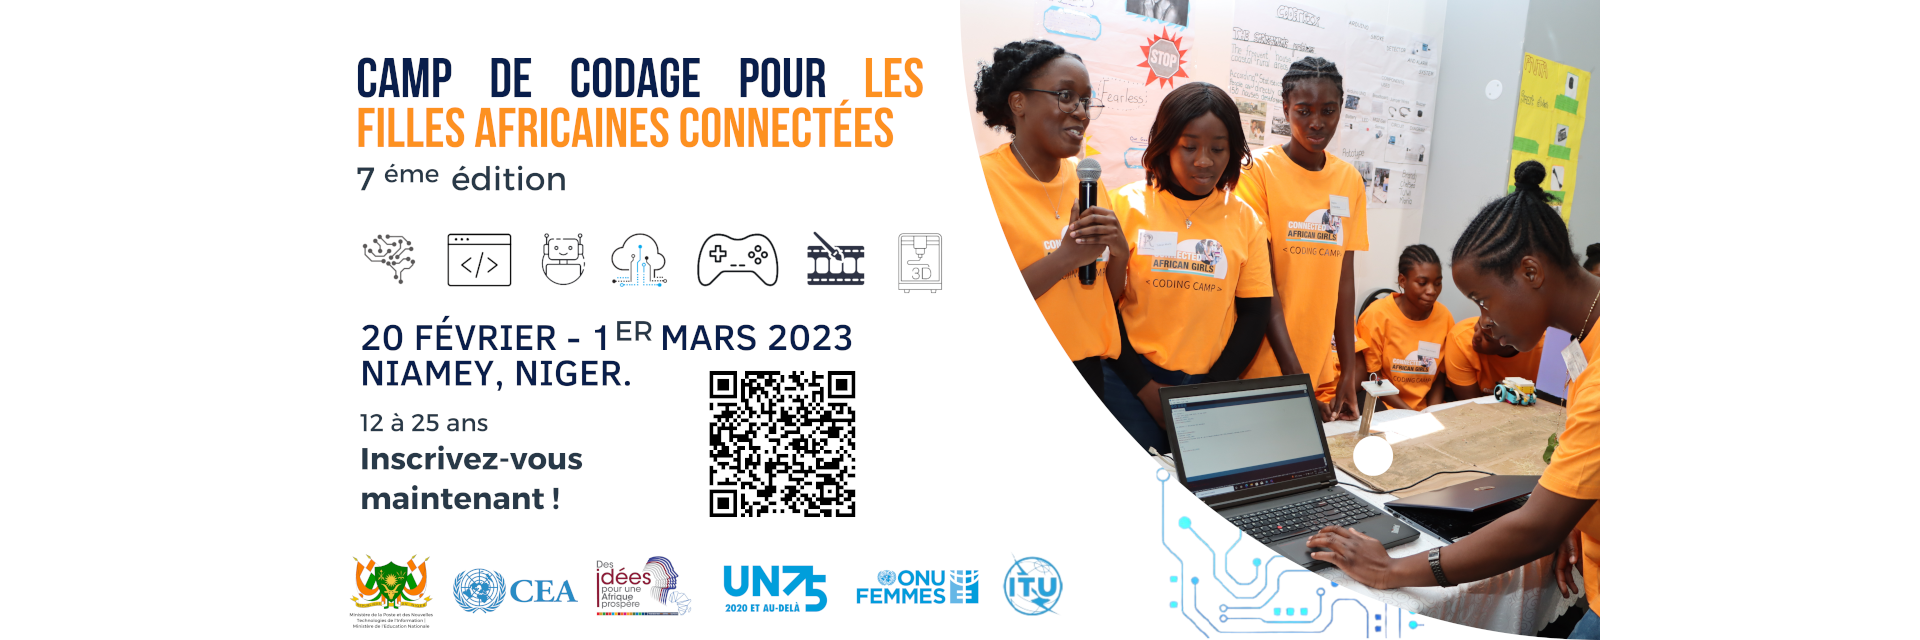 La 7ème édition du Camp de codage pour les filles connectées en Afrique se tiendra à Niamey, Niger.